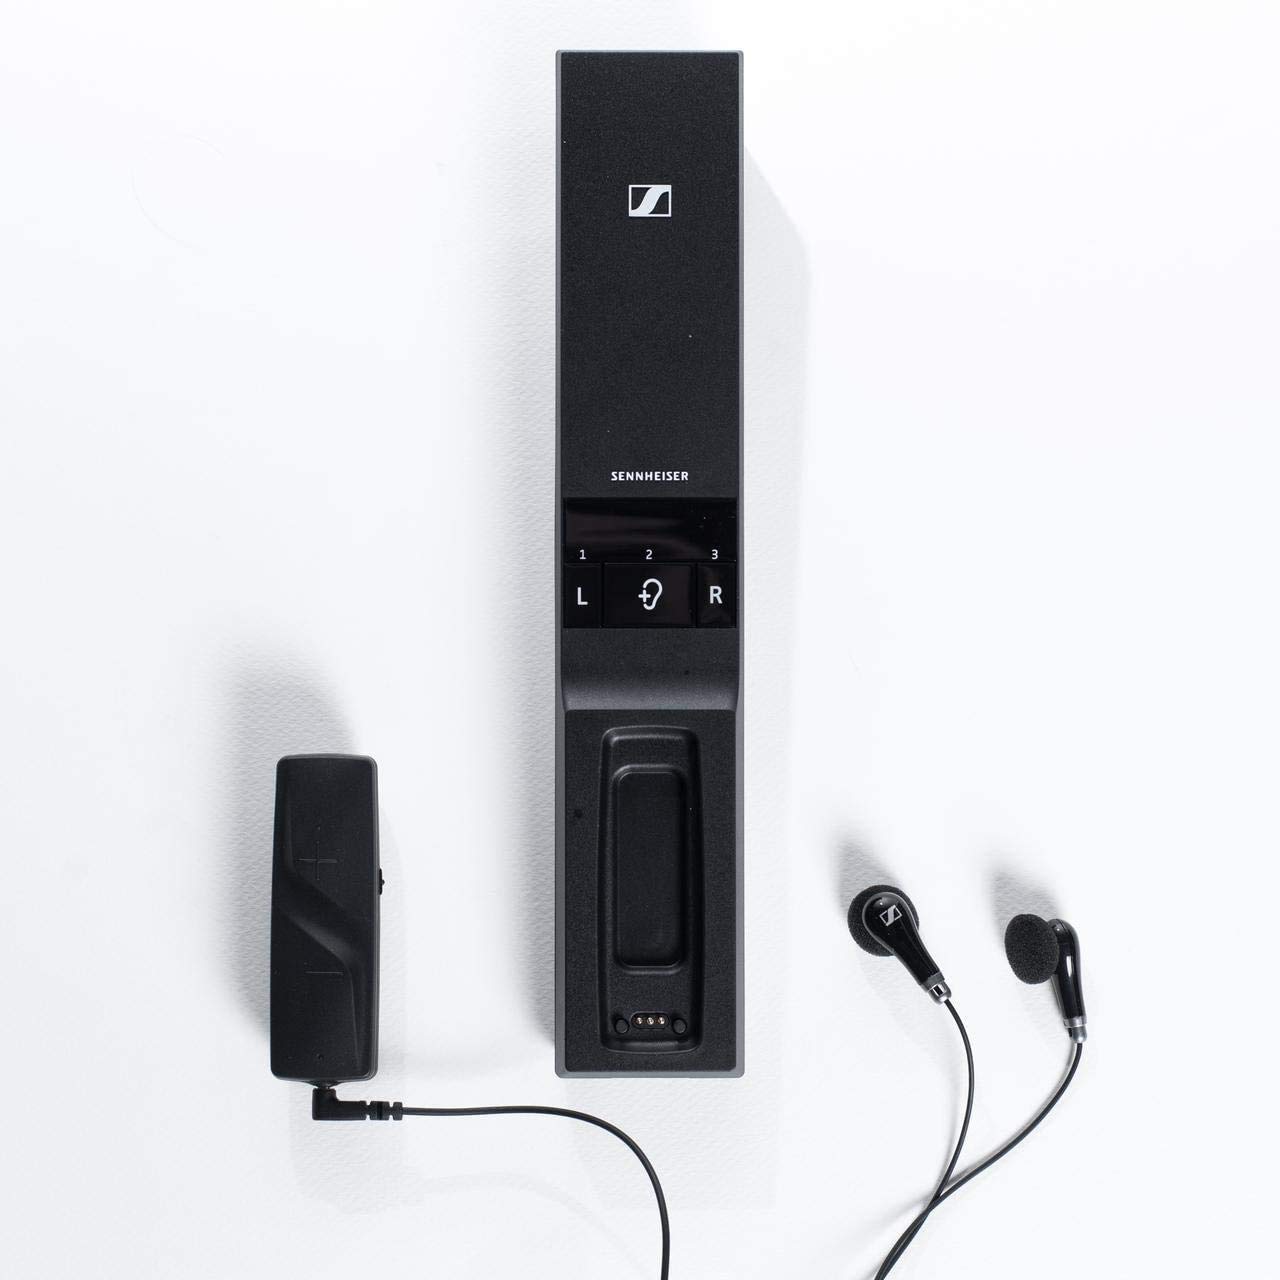 Sennheiser Consumer Audio Cyfrowe bezprzewodowe słuchawki Flex 5000 do słuchania telewizji – czarne